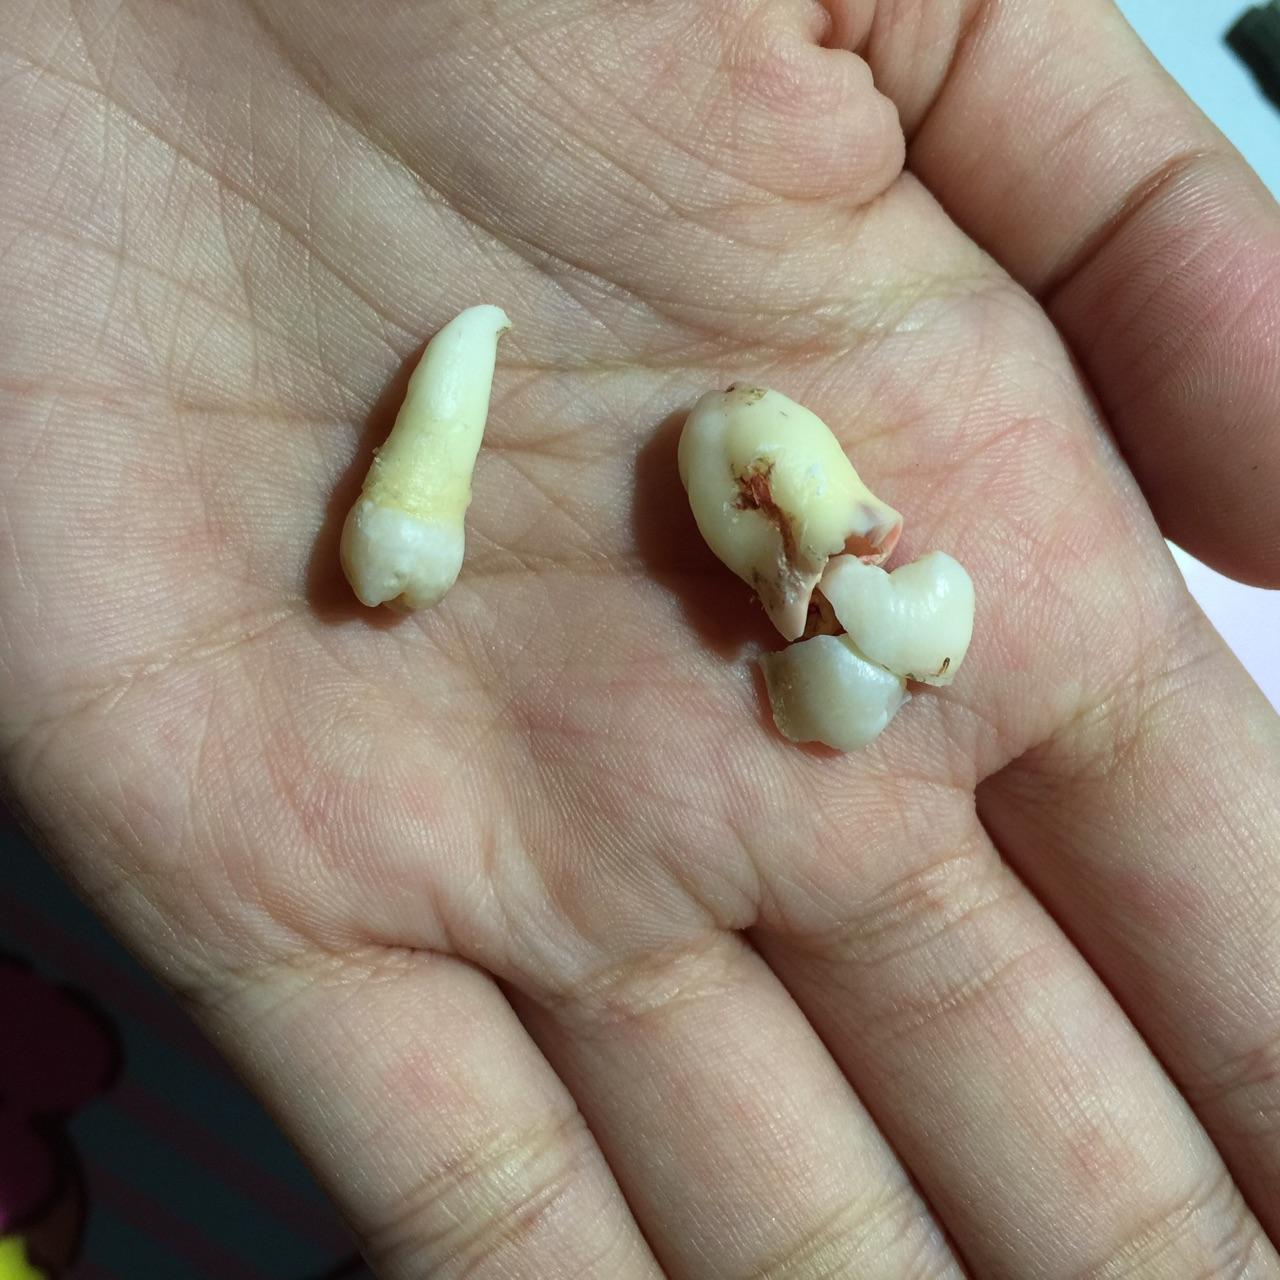 拔下来的牙齿的归属权是病人的吗? 